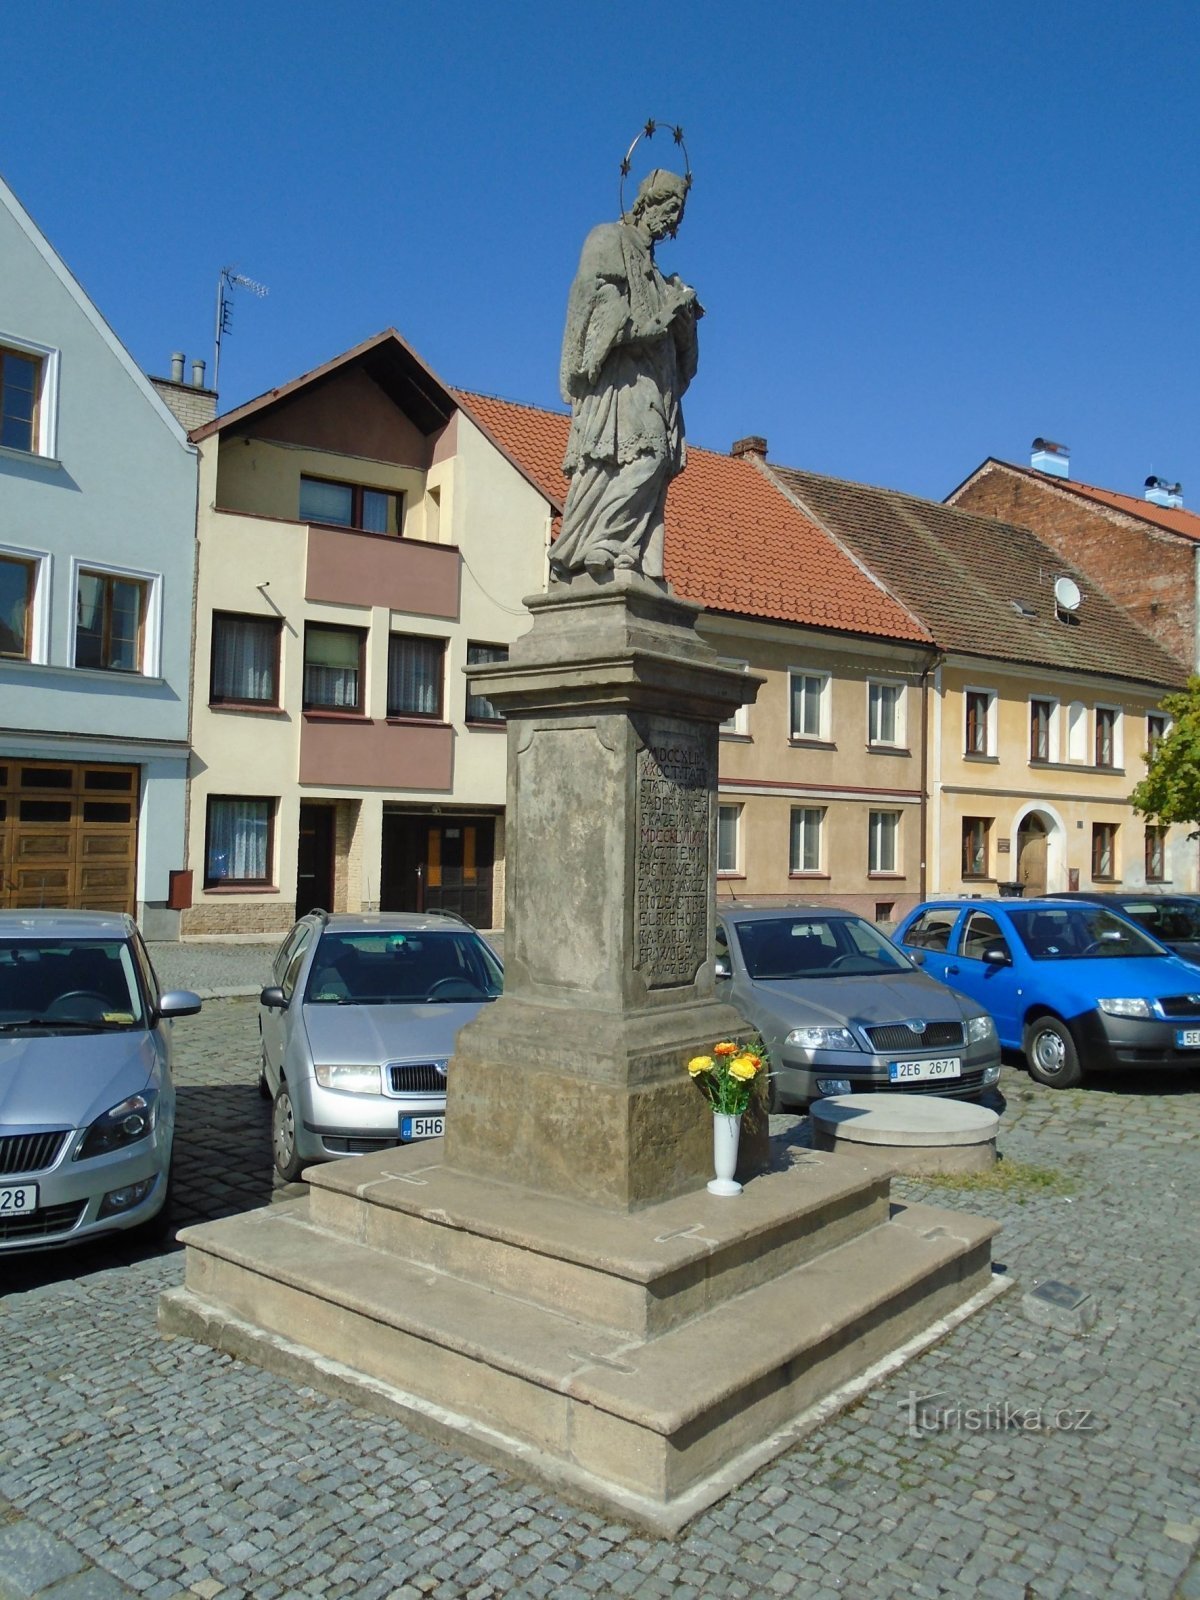 Statue of St. John of Nepomuck on Bělobranské náměstí (Pardubice, April 18.4.2018, XNUMX)